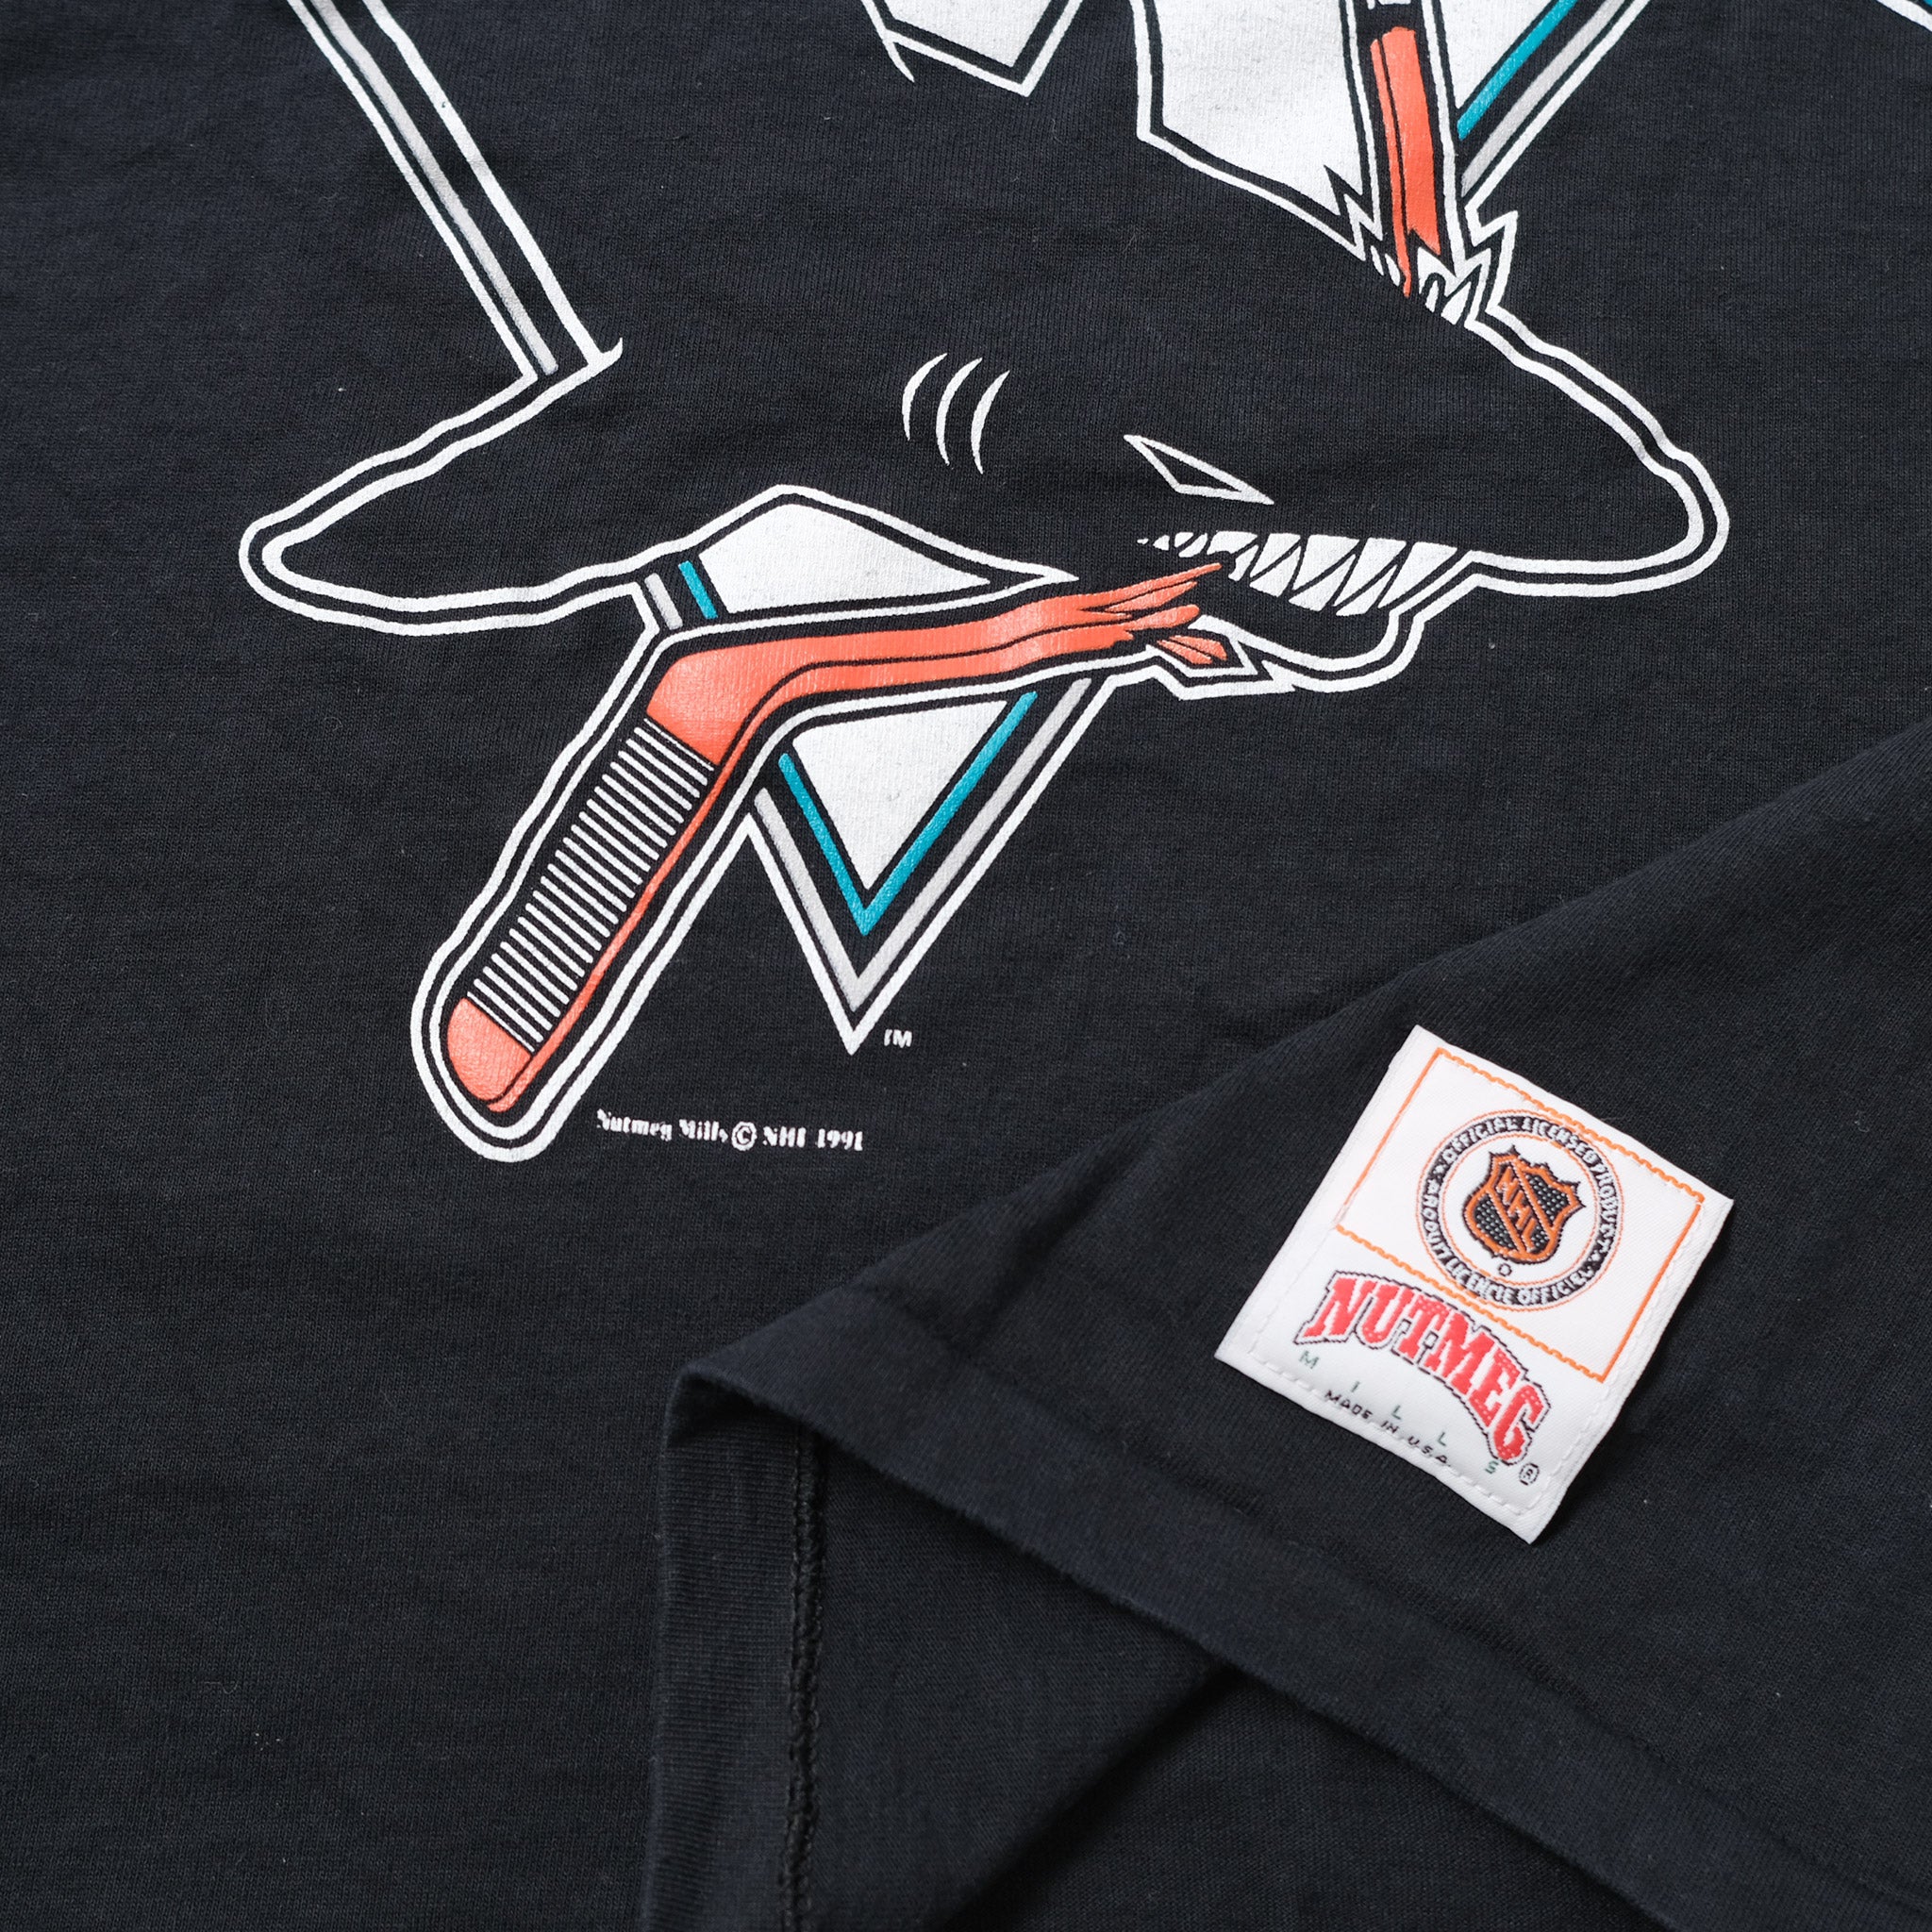 LOGO 7, Shirts, Vtg San Jose Sharks Sweatshirt